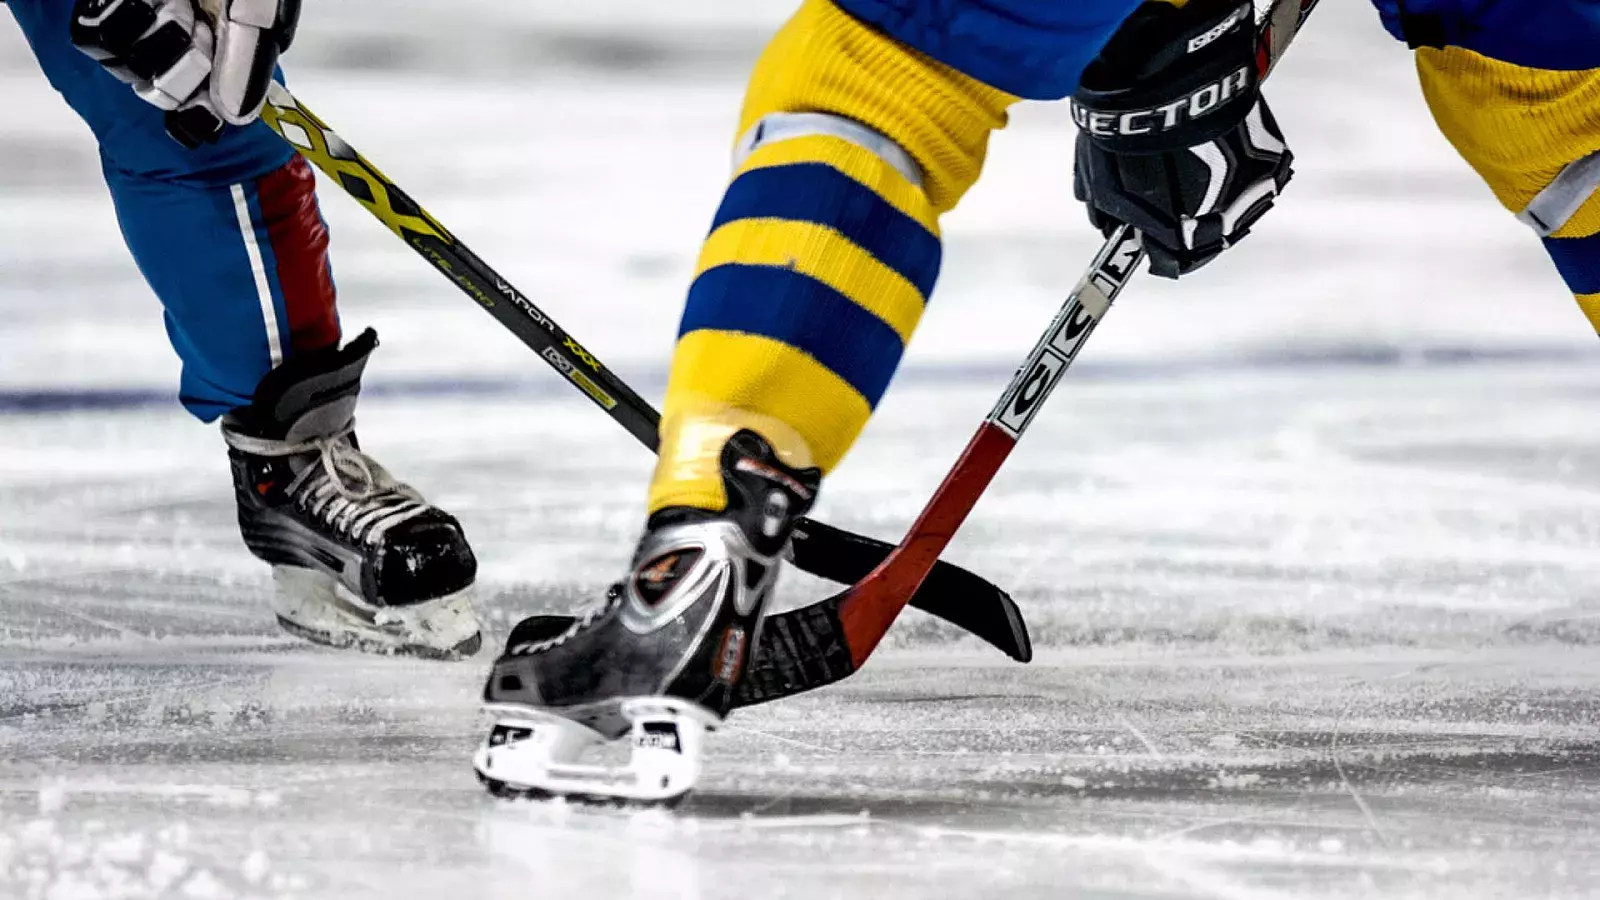 VIDEO: Muere jugador de hockey tras cortarse el cuello con la cuchilla de un patín en pleno partido